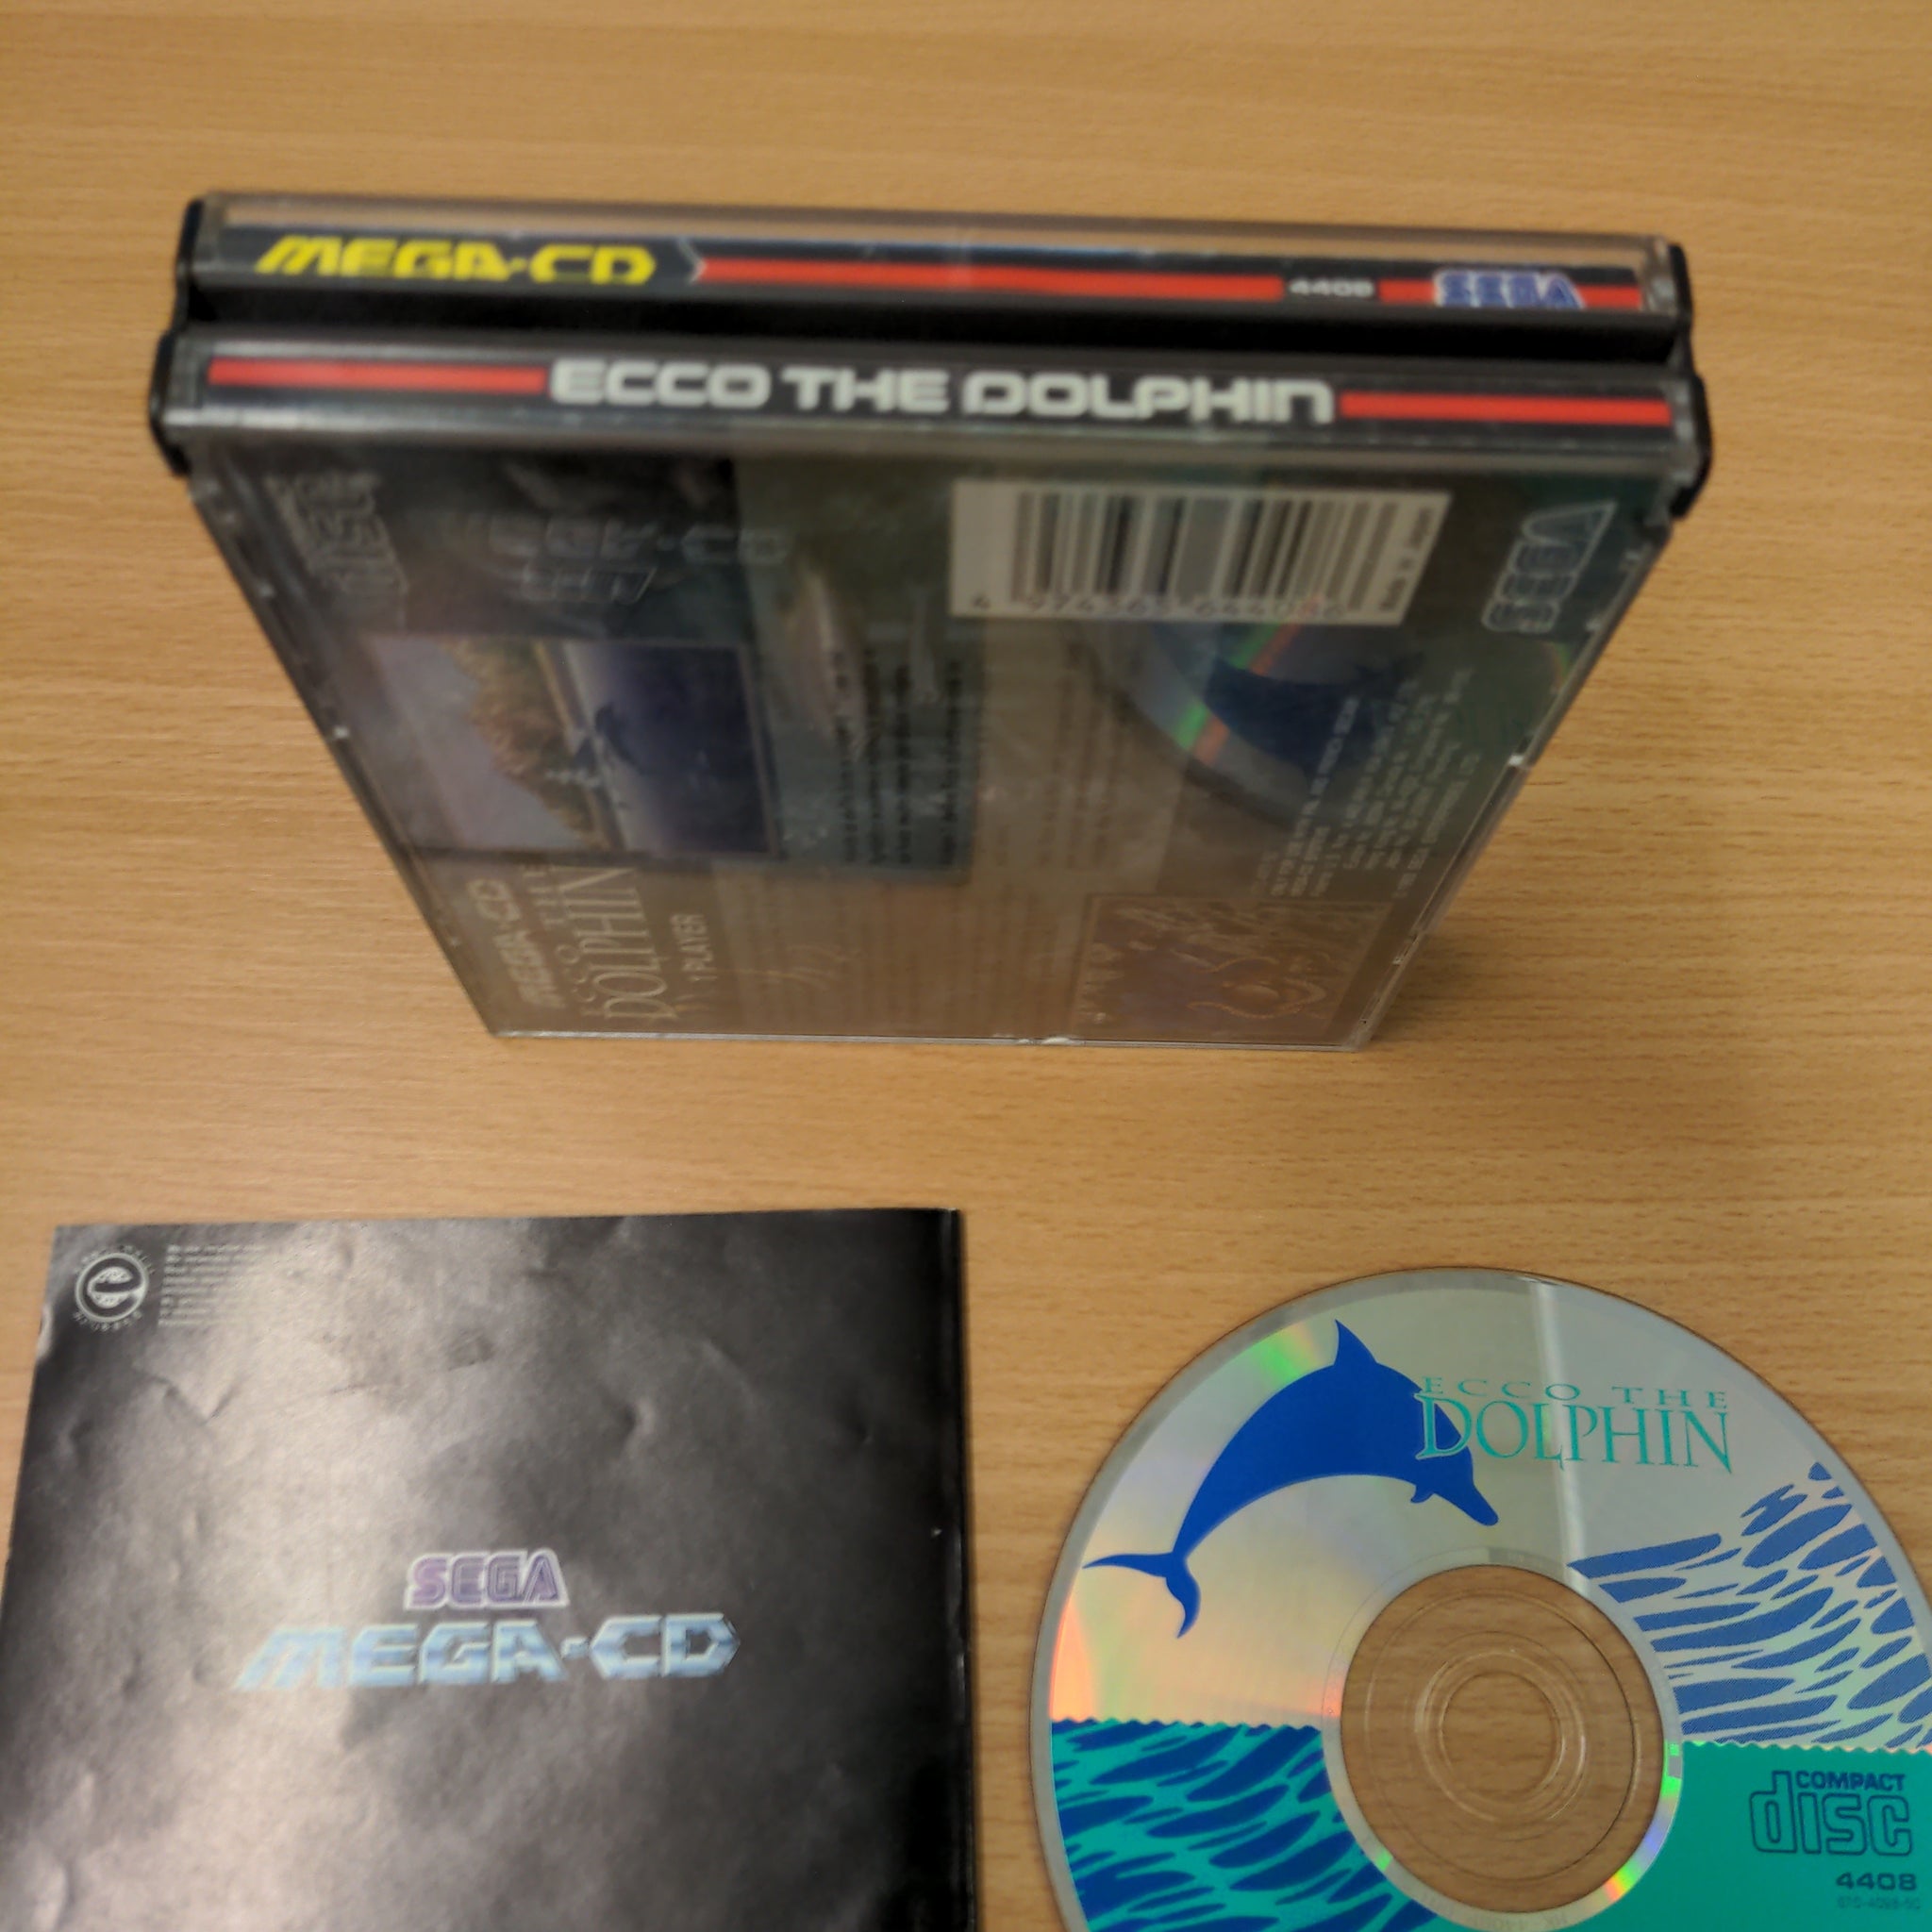 Ecco The Dolphin Sega Mega-CD game